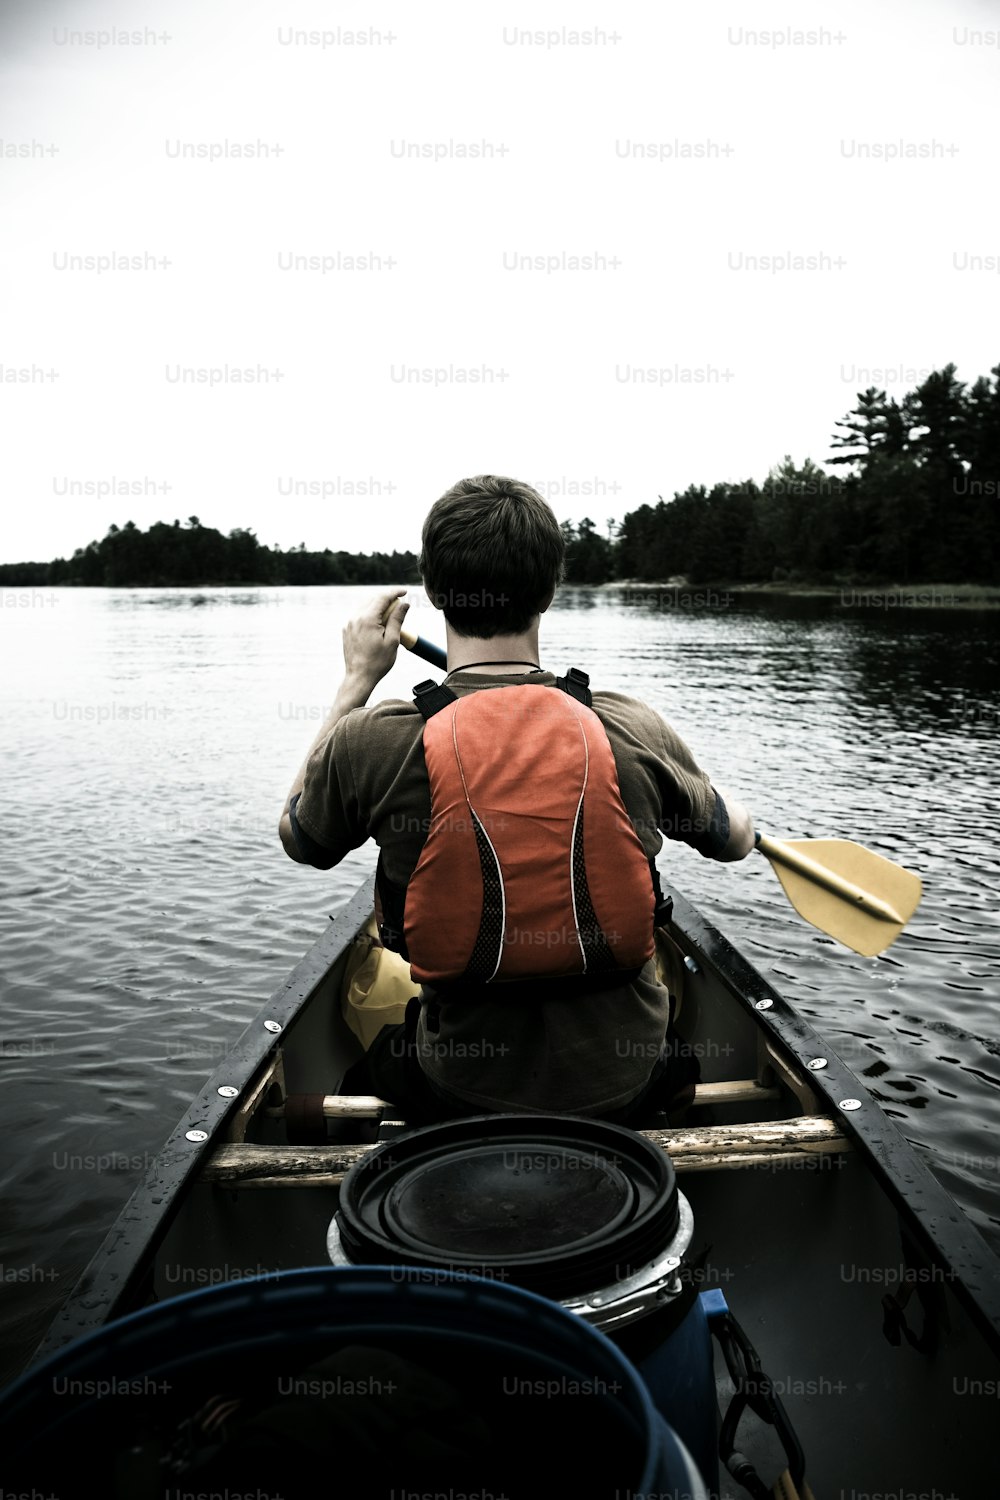 湖でカヌーを漕ぐ男